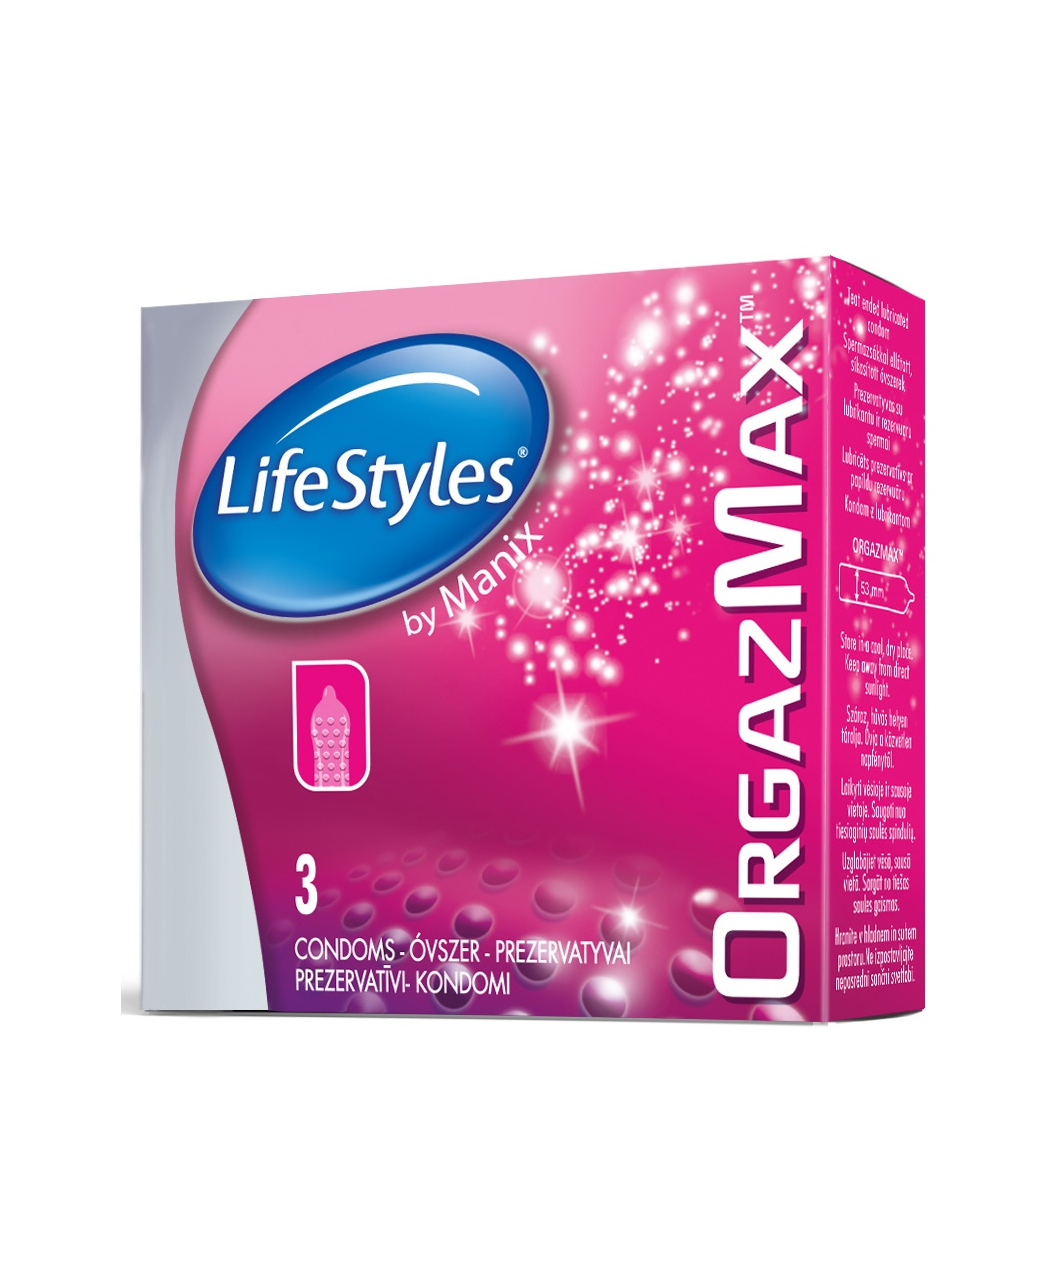 LifeStyles OrgazMax (3 pcs)